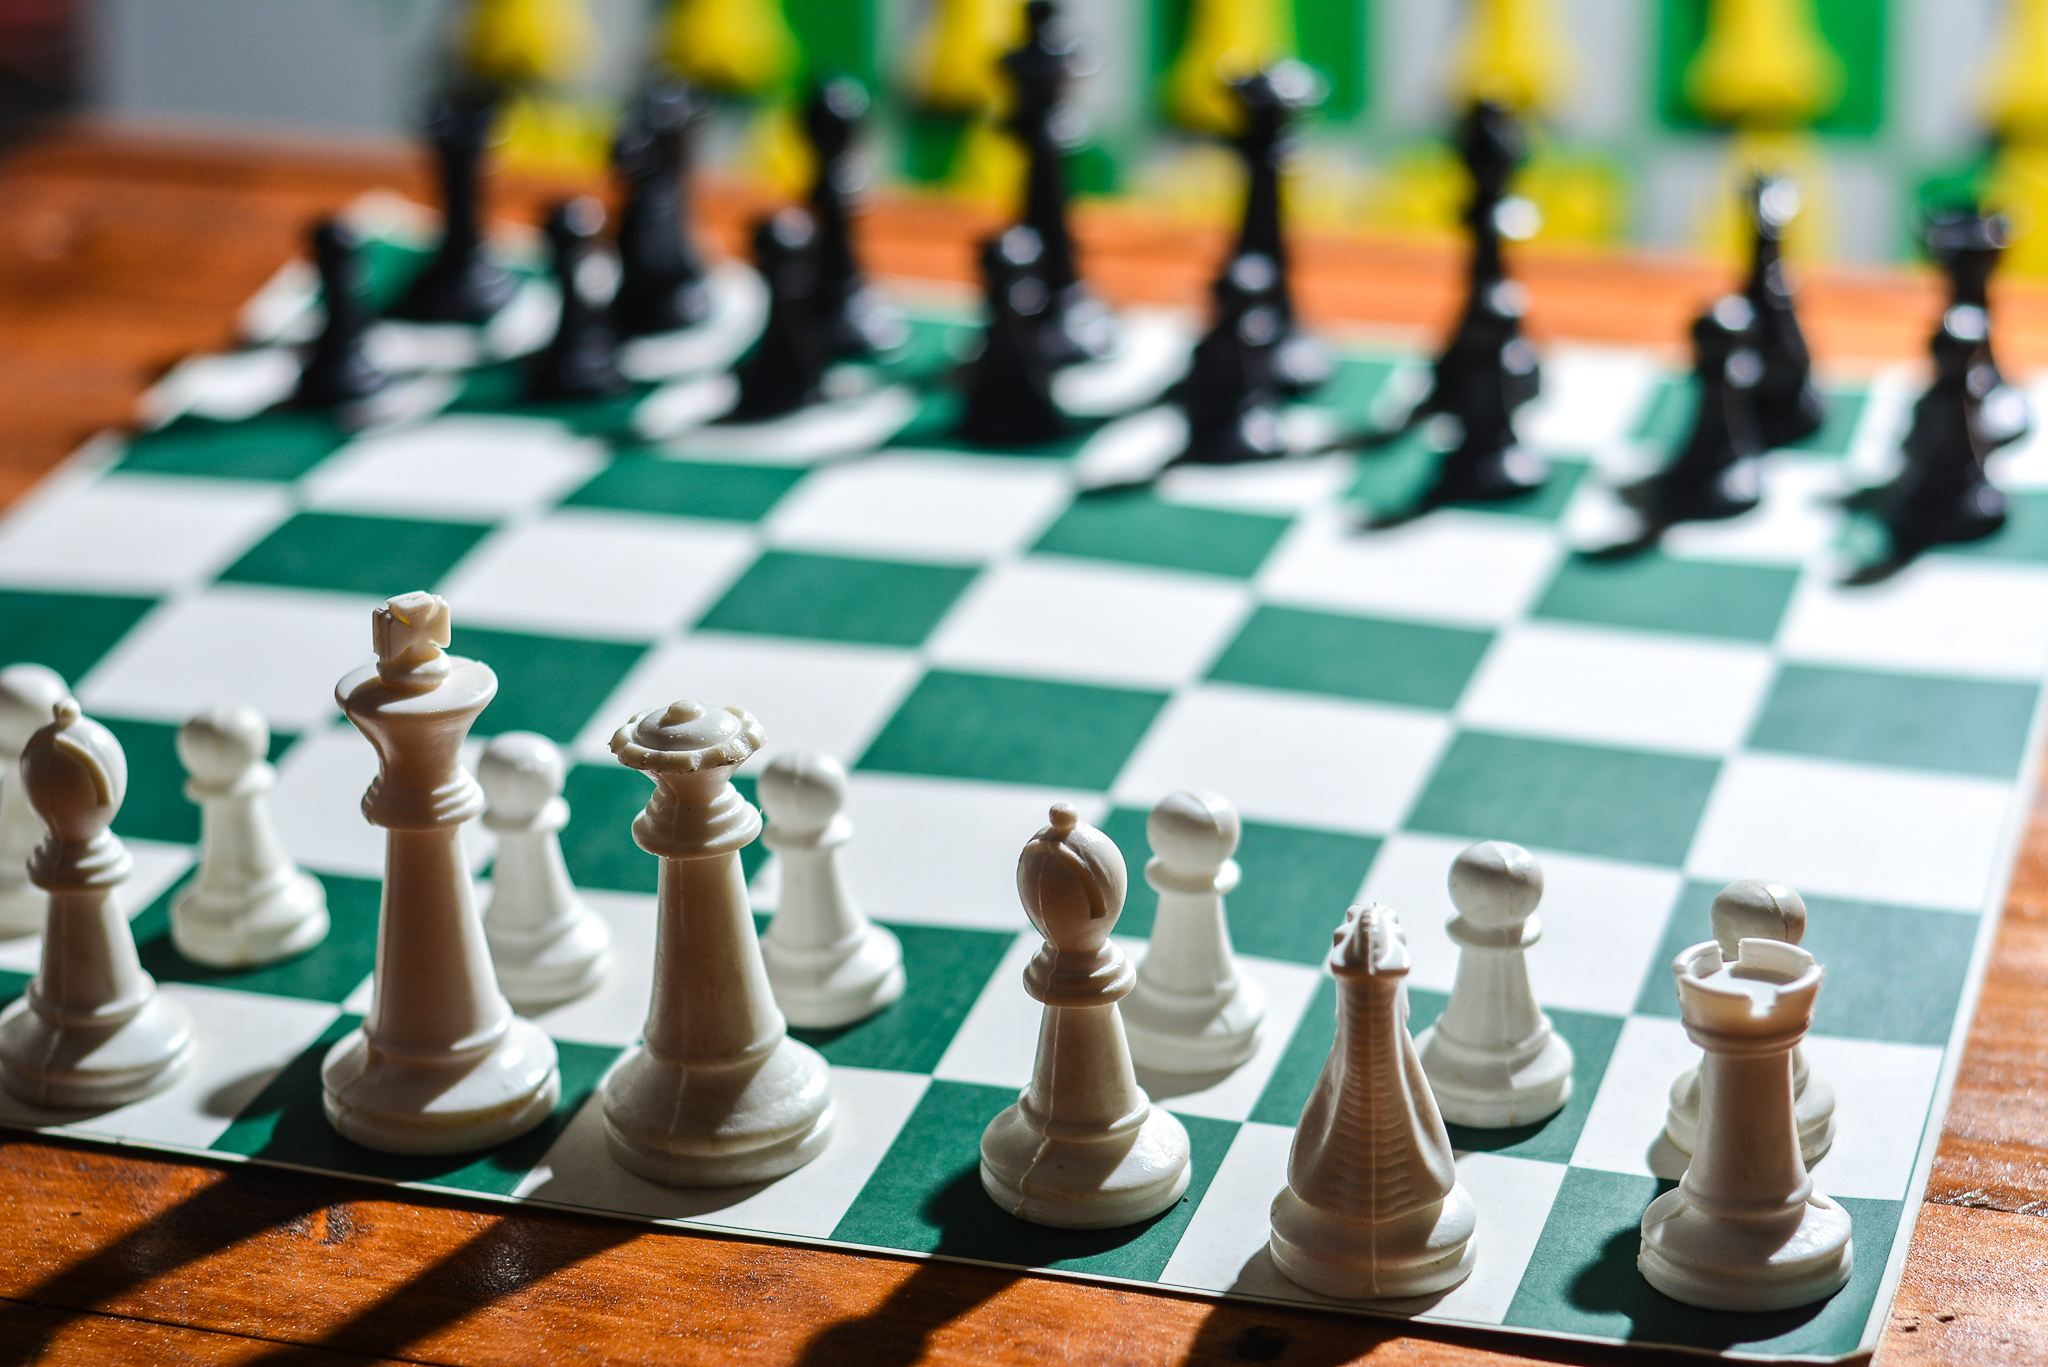 Quiosque 2 recebe evento de xadrez no sábado (18)